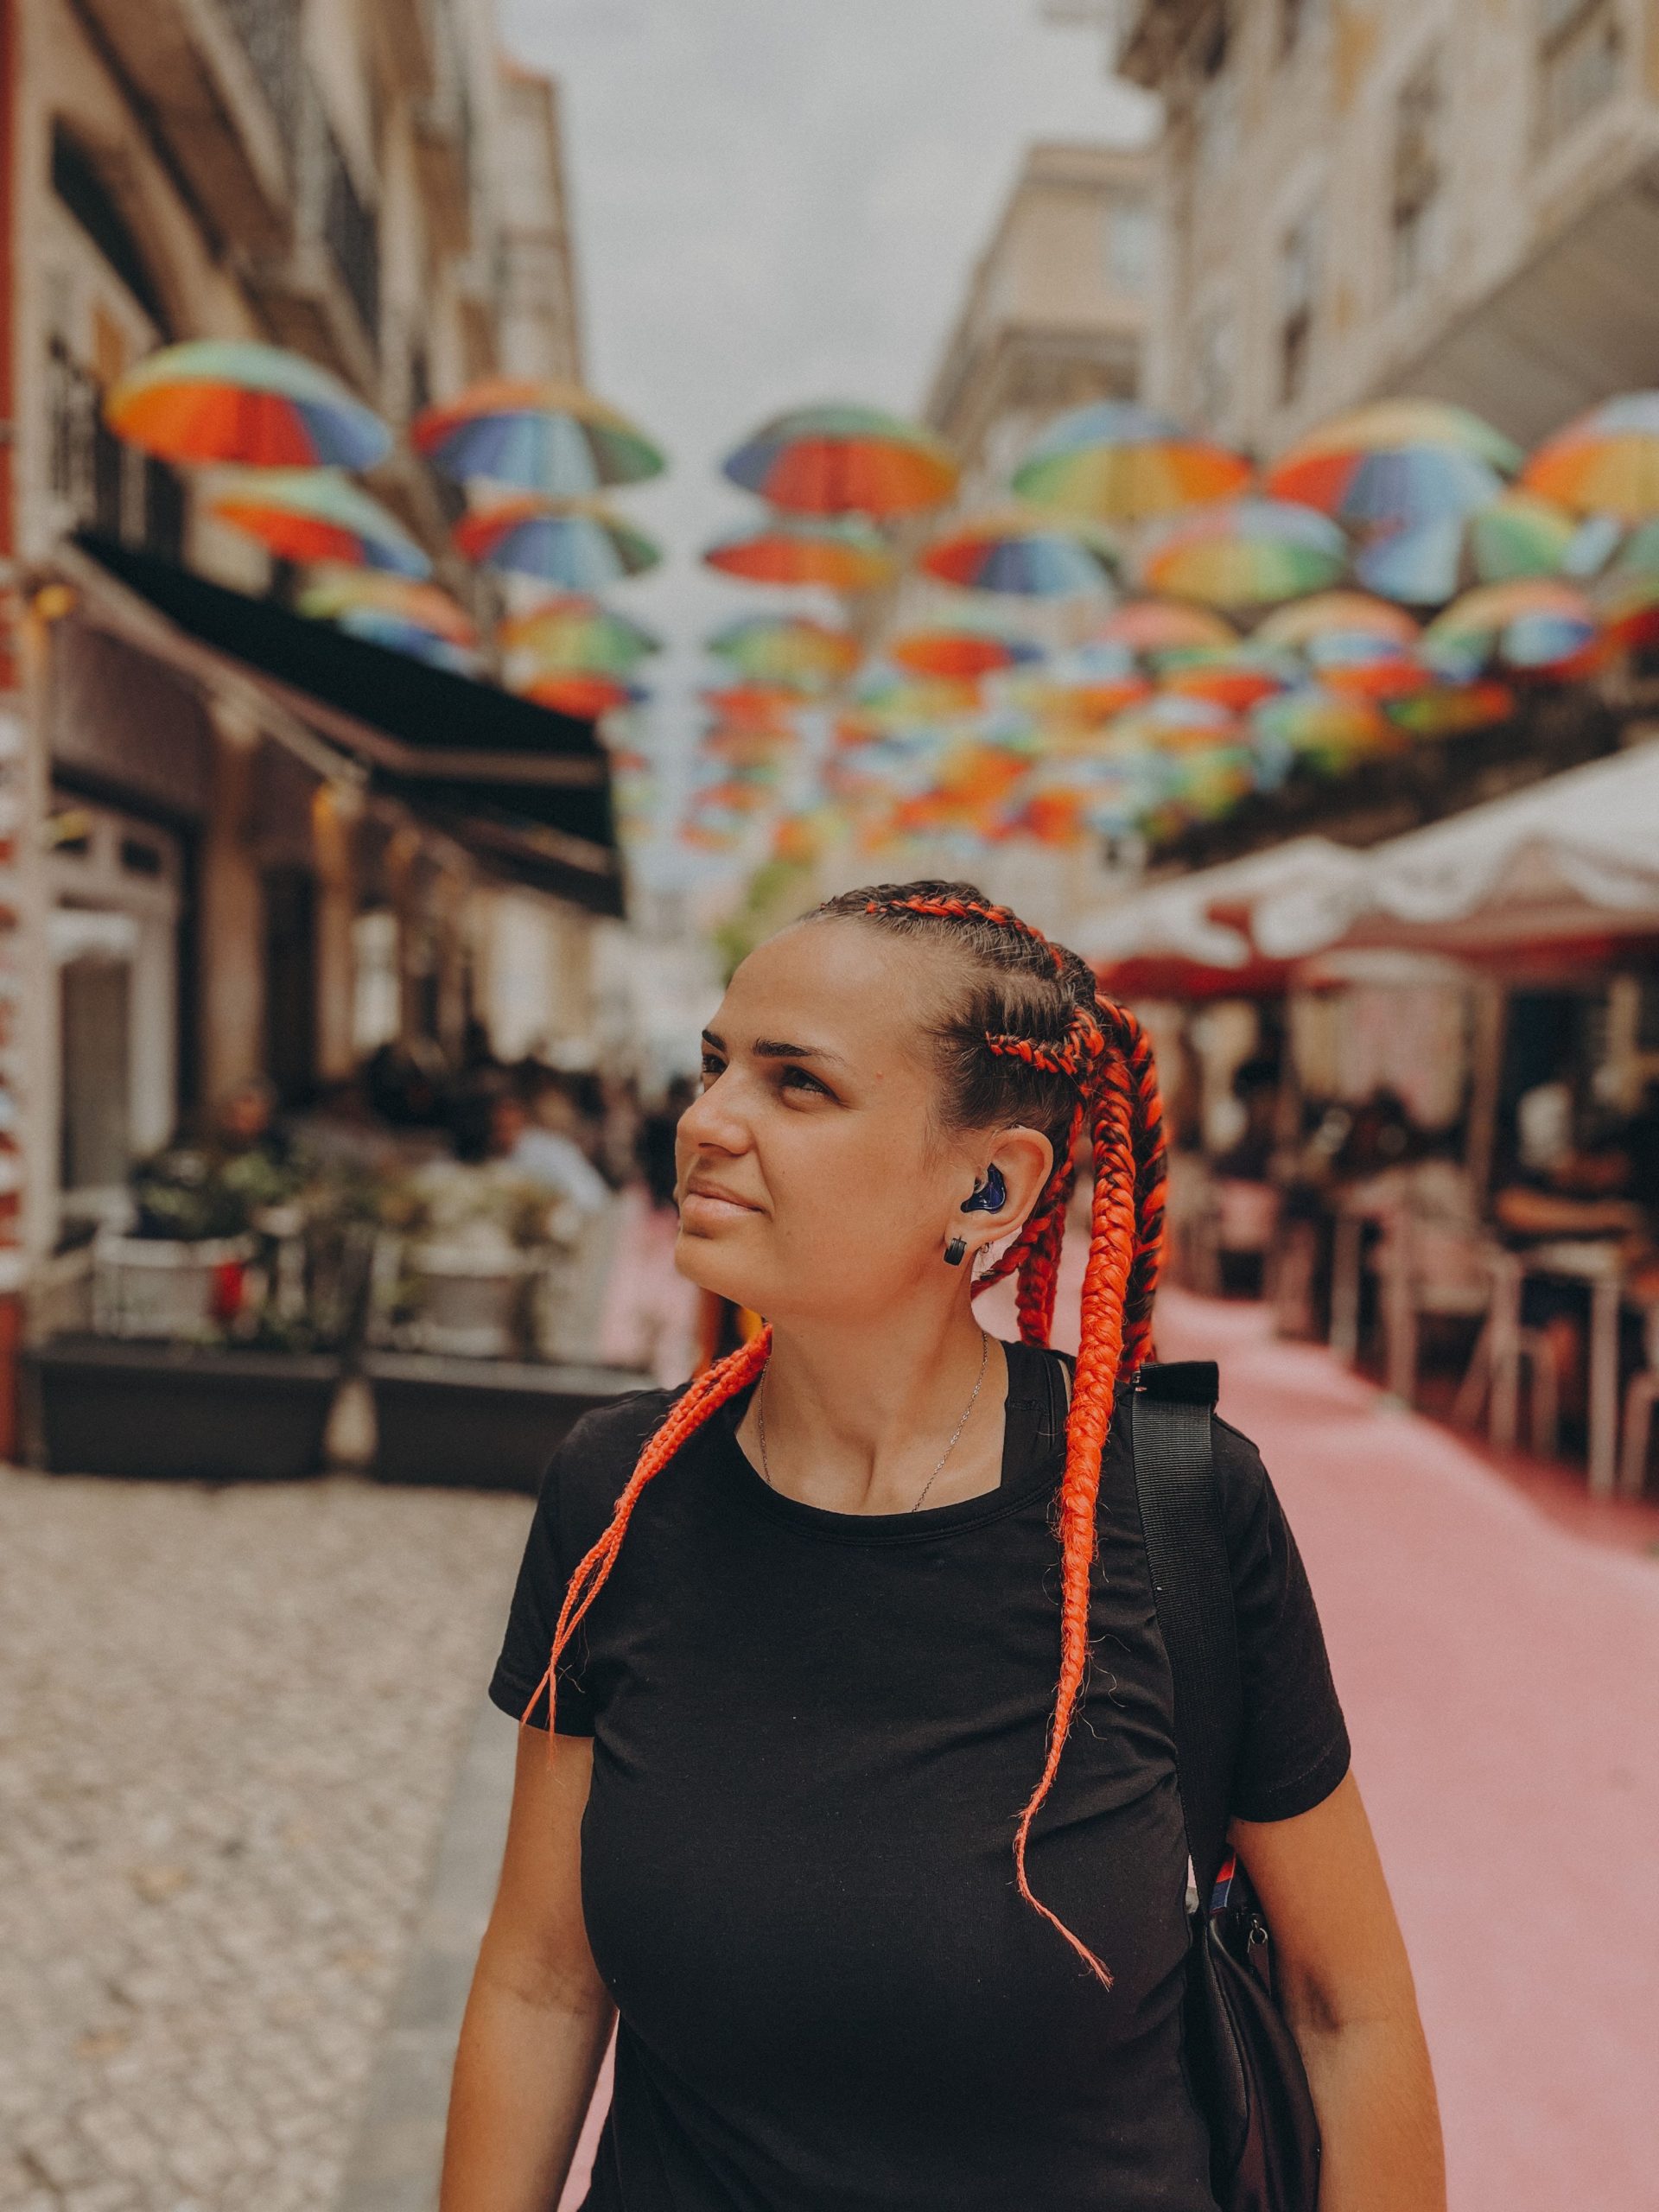 Zdjęcie przestawia zamyśloną Olesię Vasichkina ma zaplecione włosy na tle ulicy pełnej kolorowych parasoli.